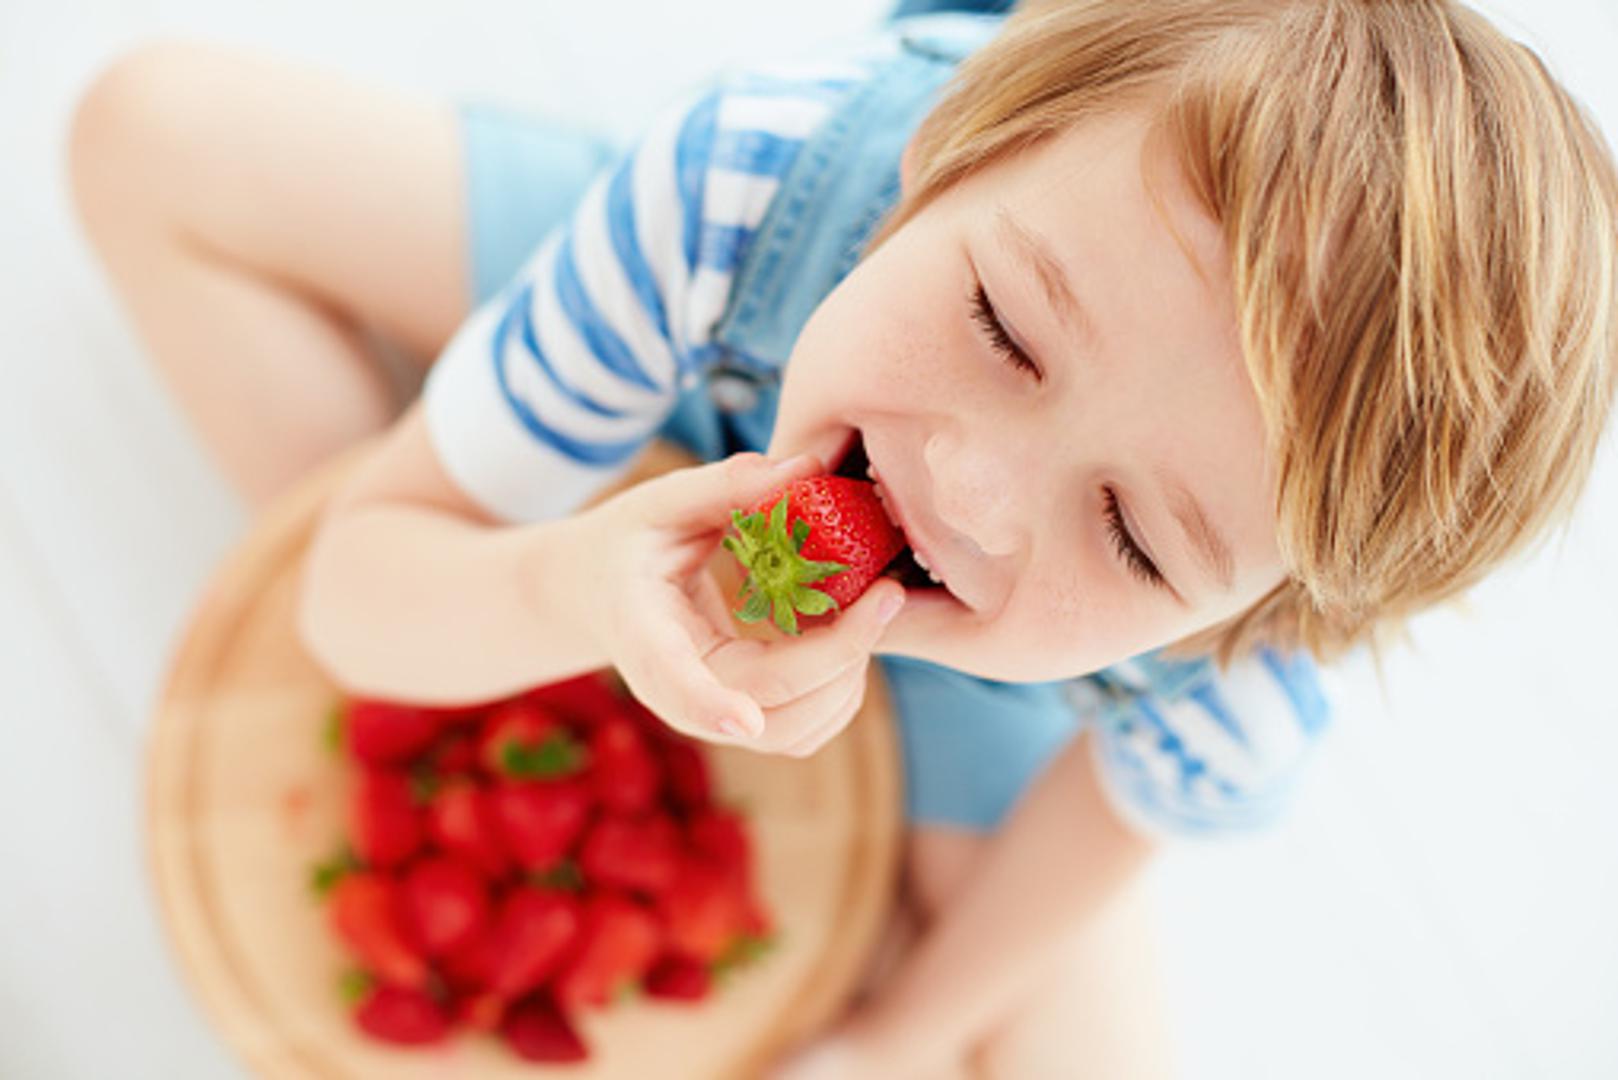 Hrane ima posvuda samo ne u ustima – Sva djeca su "neuredna" kada je riječ o konzumaciji jela, no nemojte to izreći naglas. 

